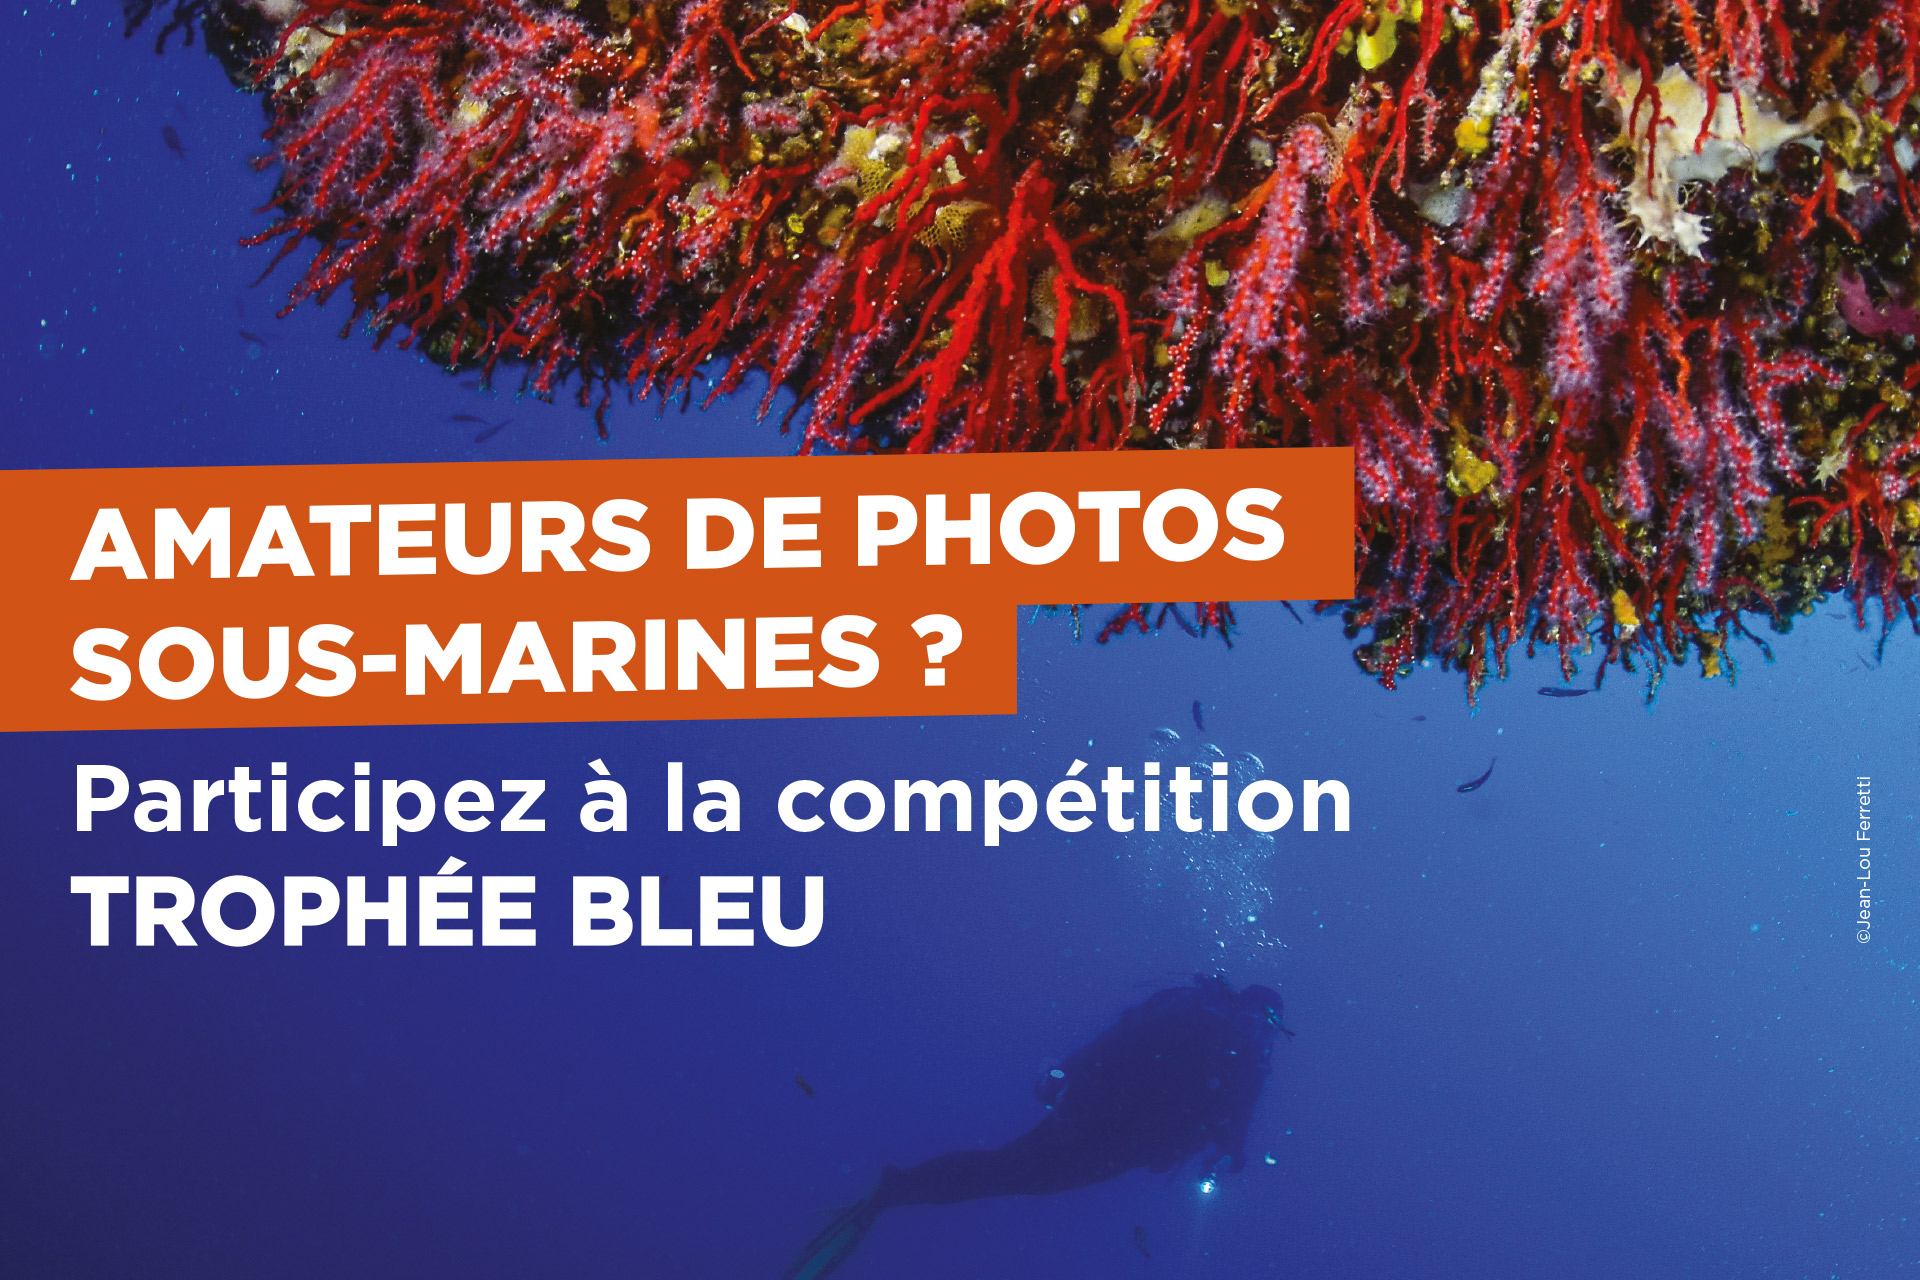 Amateurs de photos sous-marines ? Participez à la compétition 'Trophée bleu' !